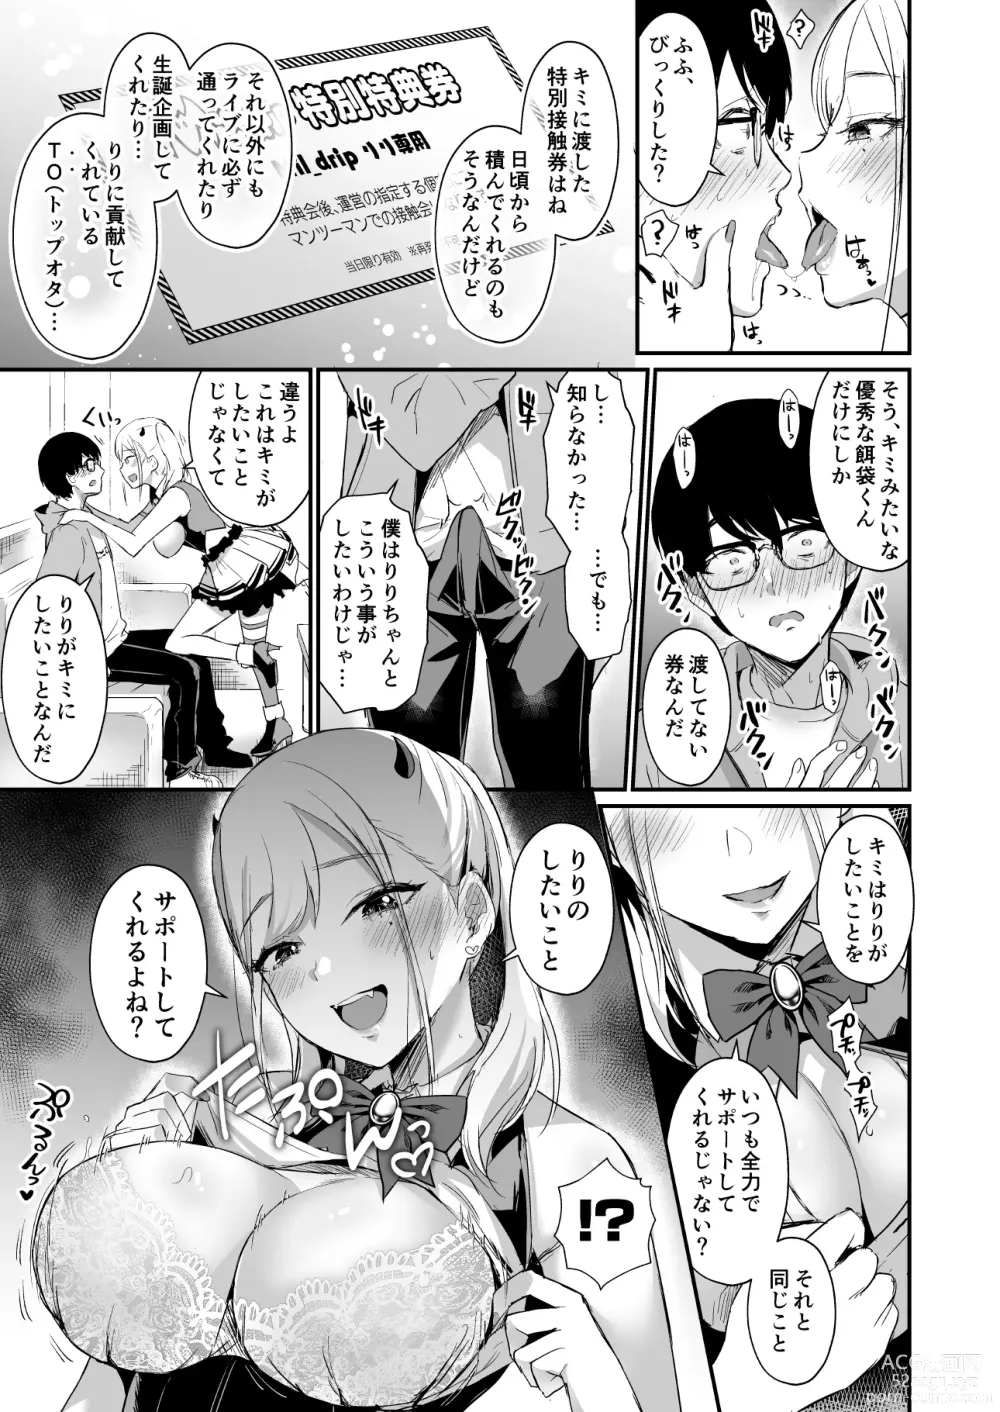 Page 12 of doujinshi 推しとエッチなことなんて無理無理無理～!!